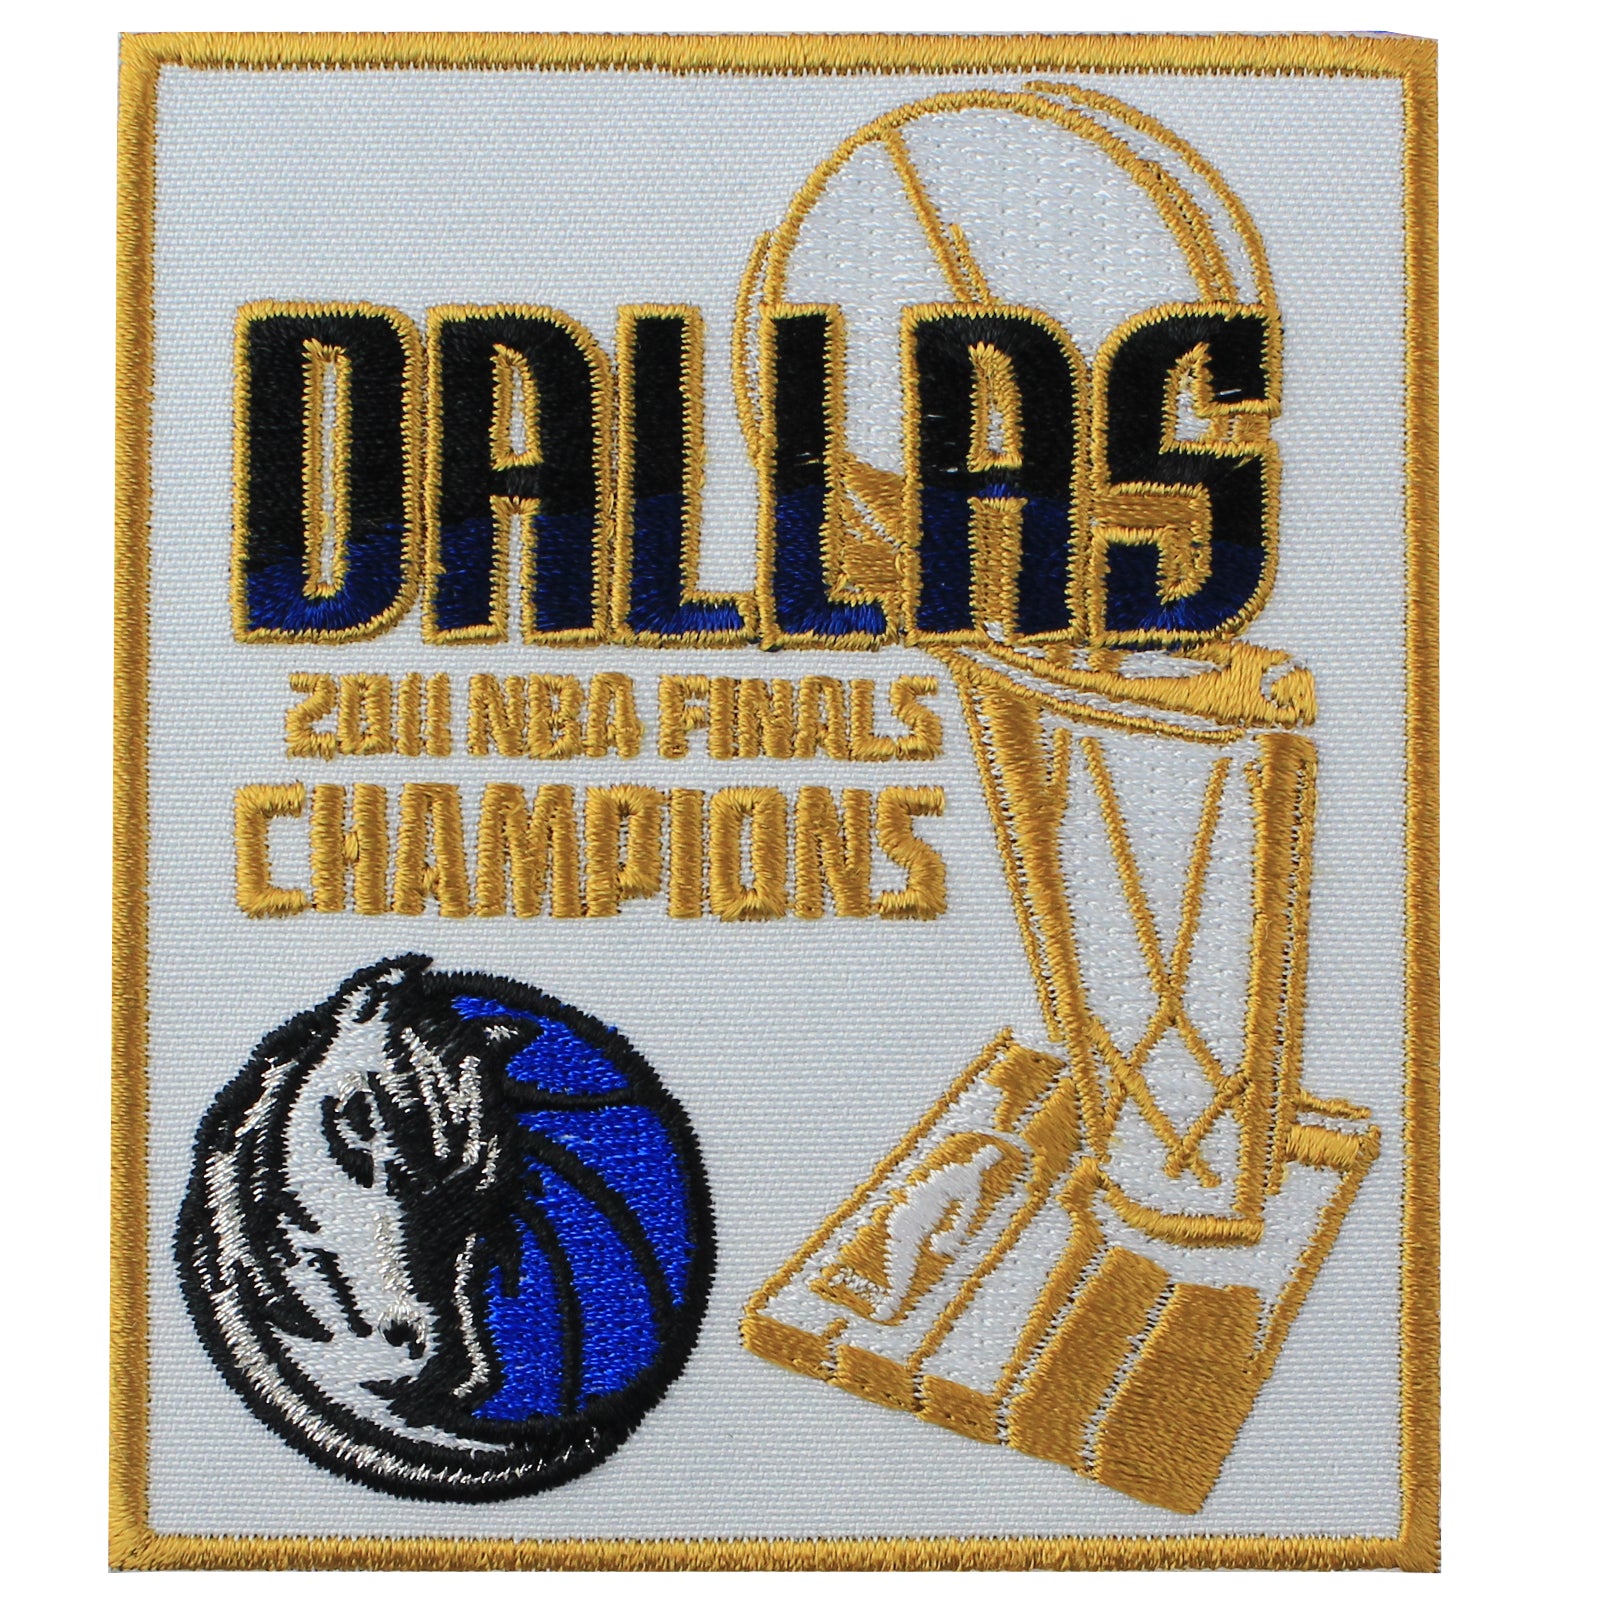 The Dallas Mavericks Are The 2011 NBA Champions